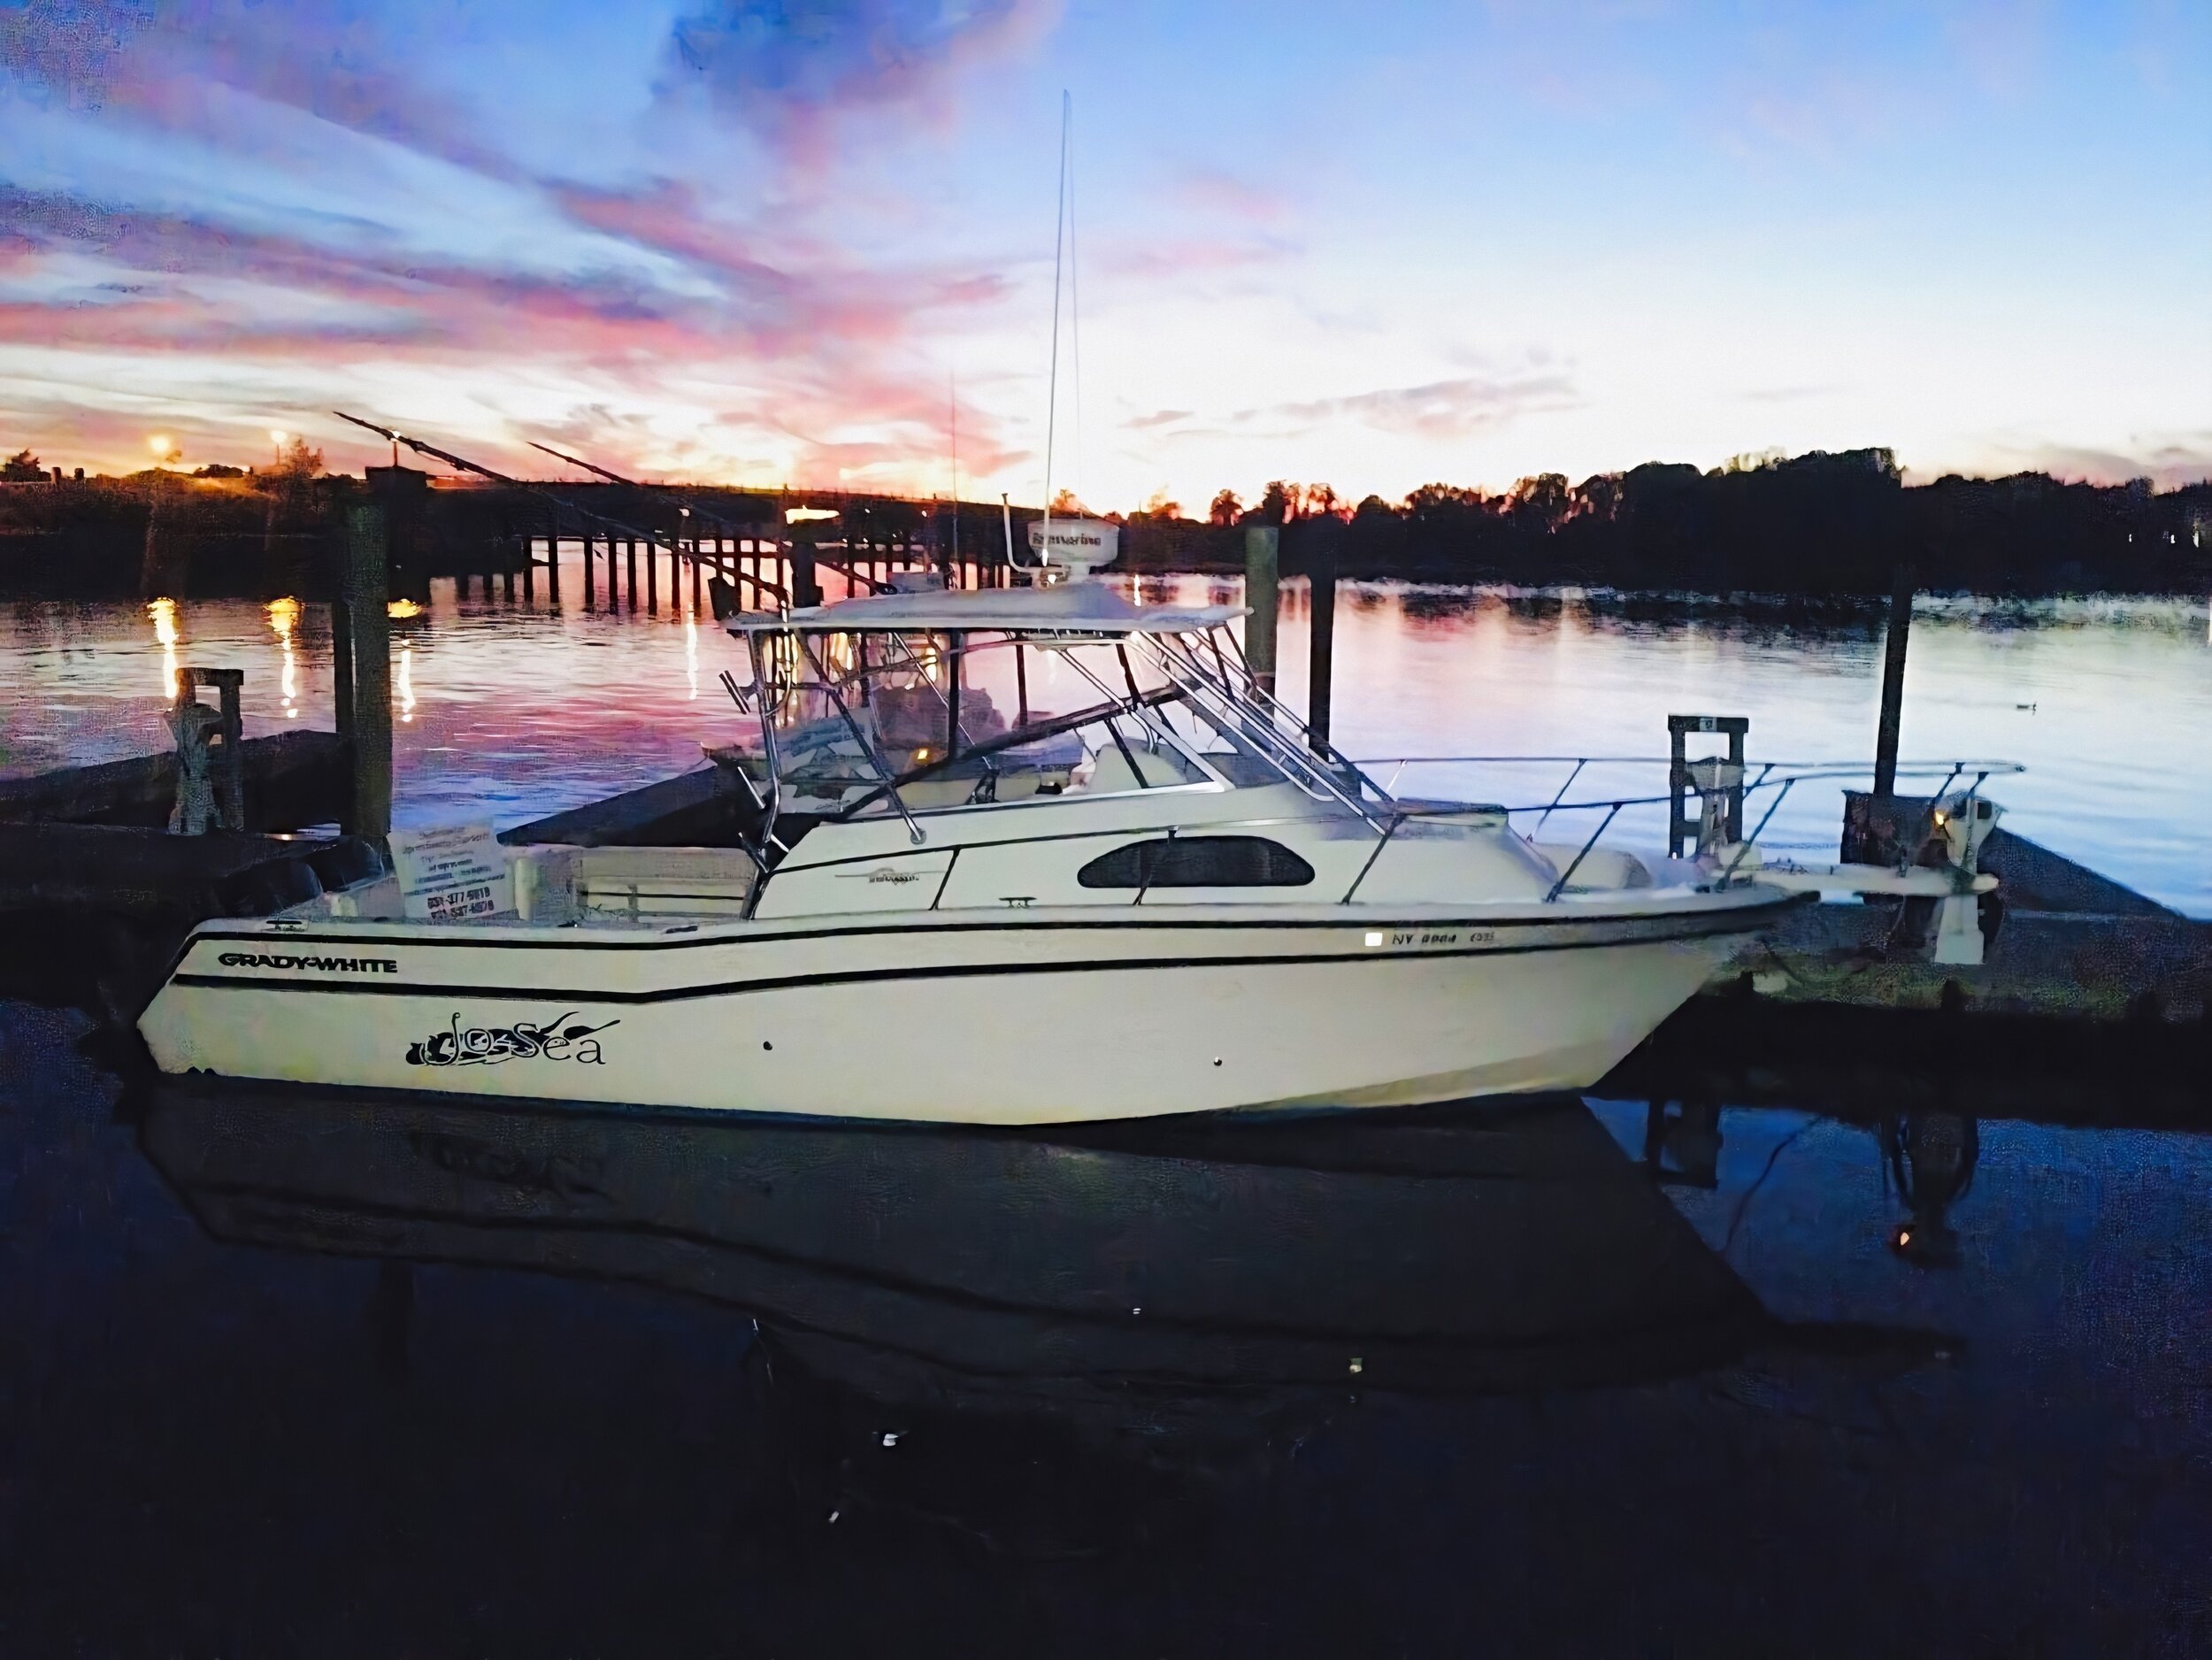 Boat Sunset Better.JPG